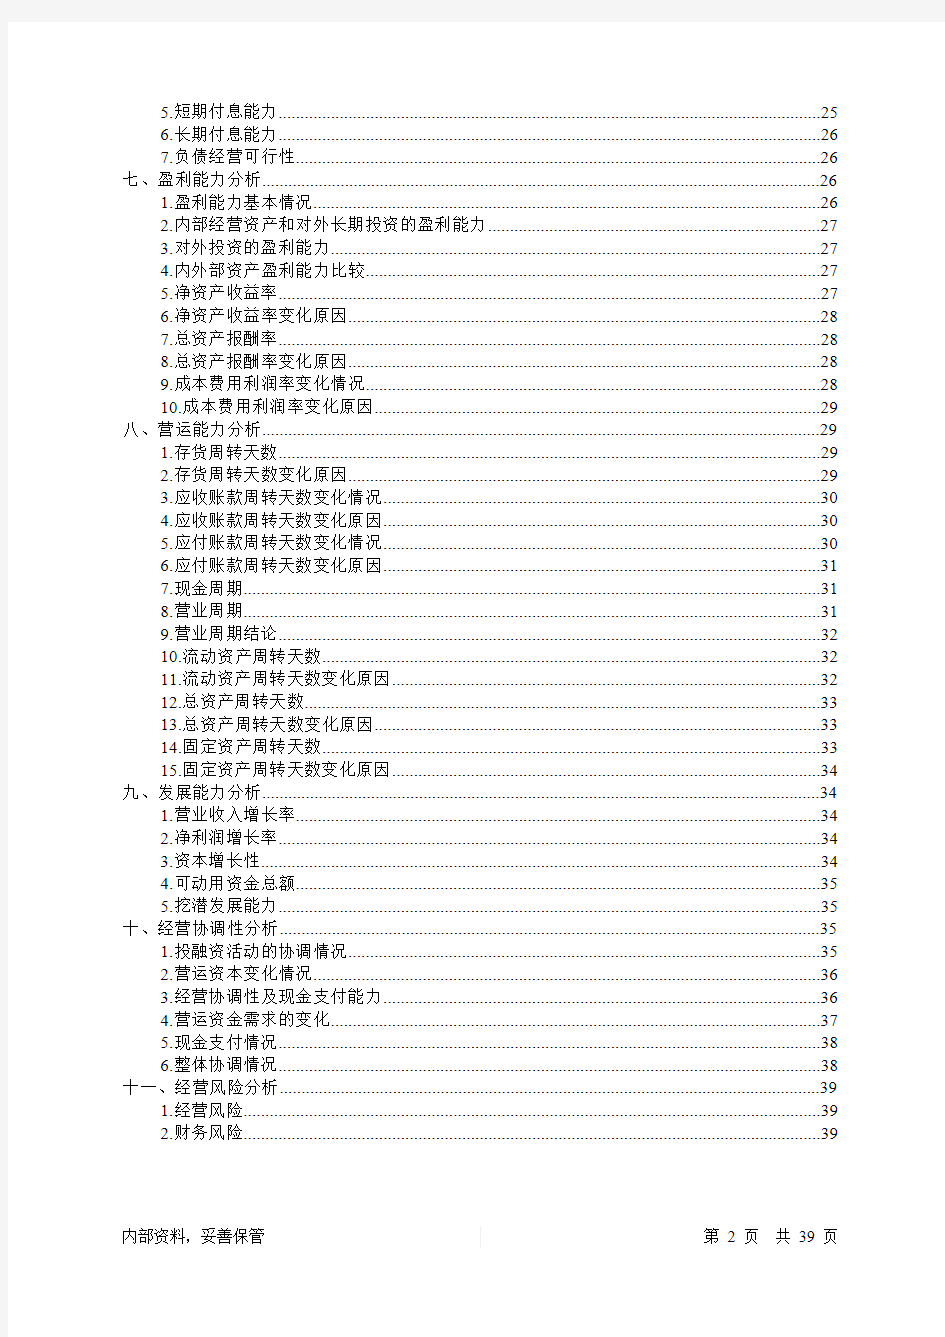 2019年中青旅财务分析详细报告-智泽华